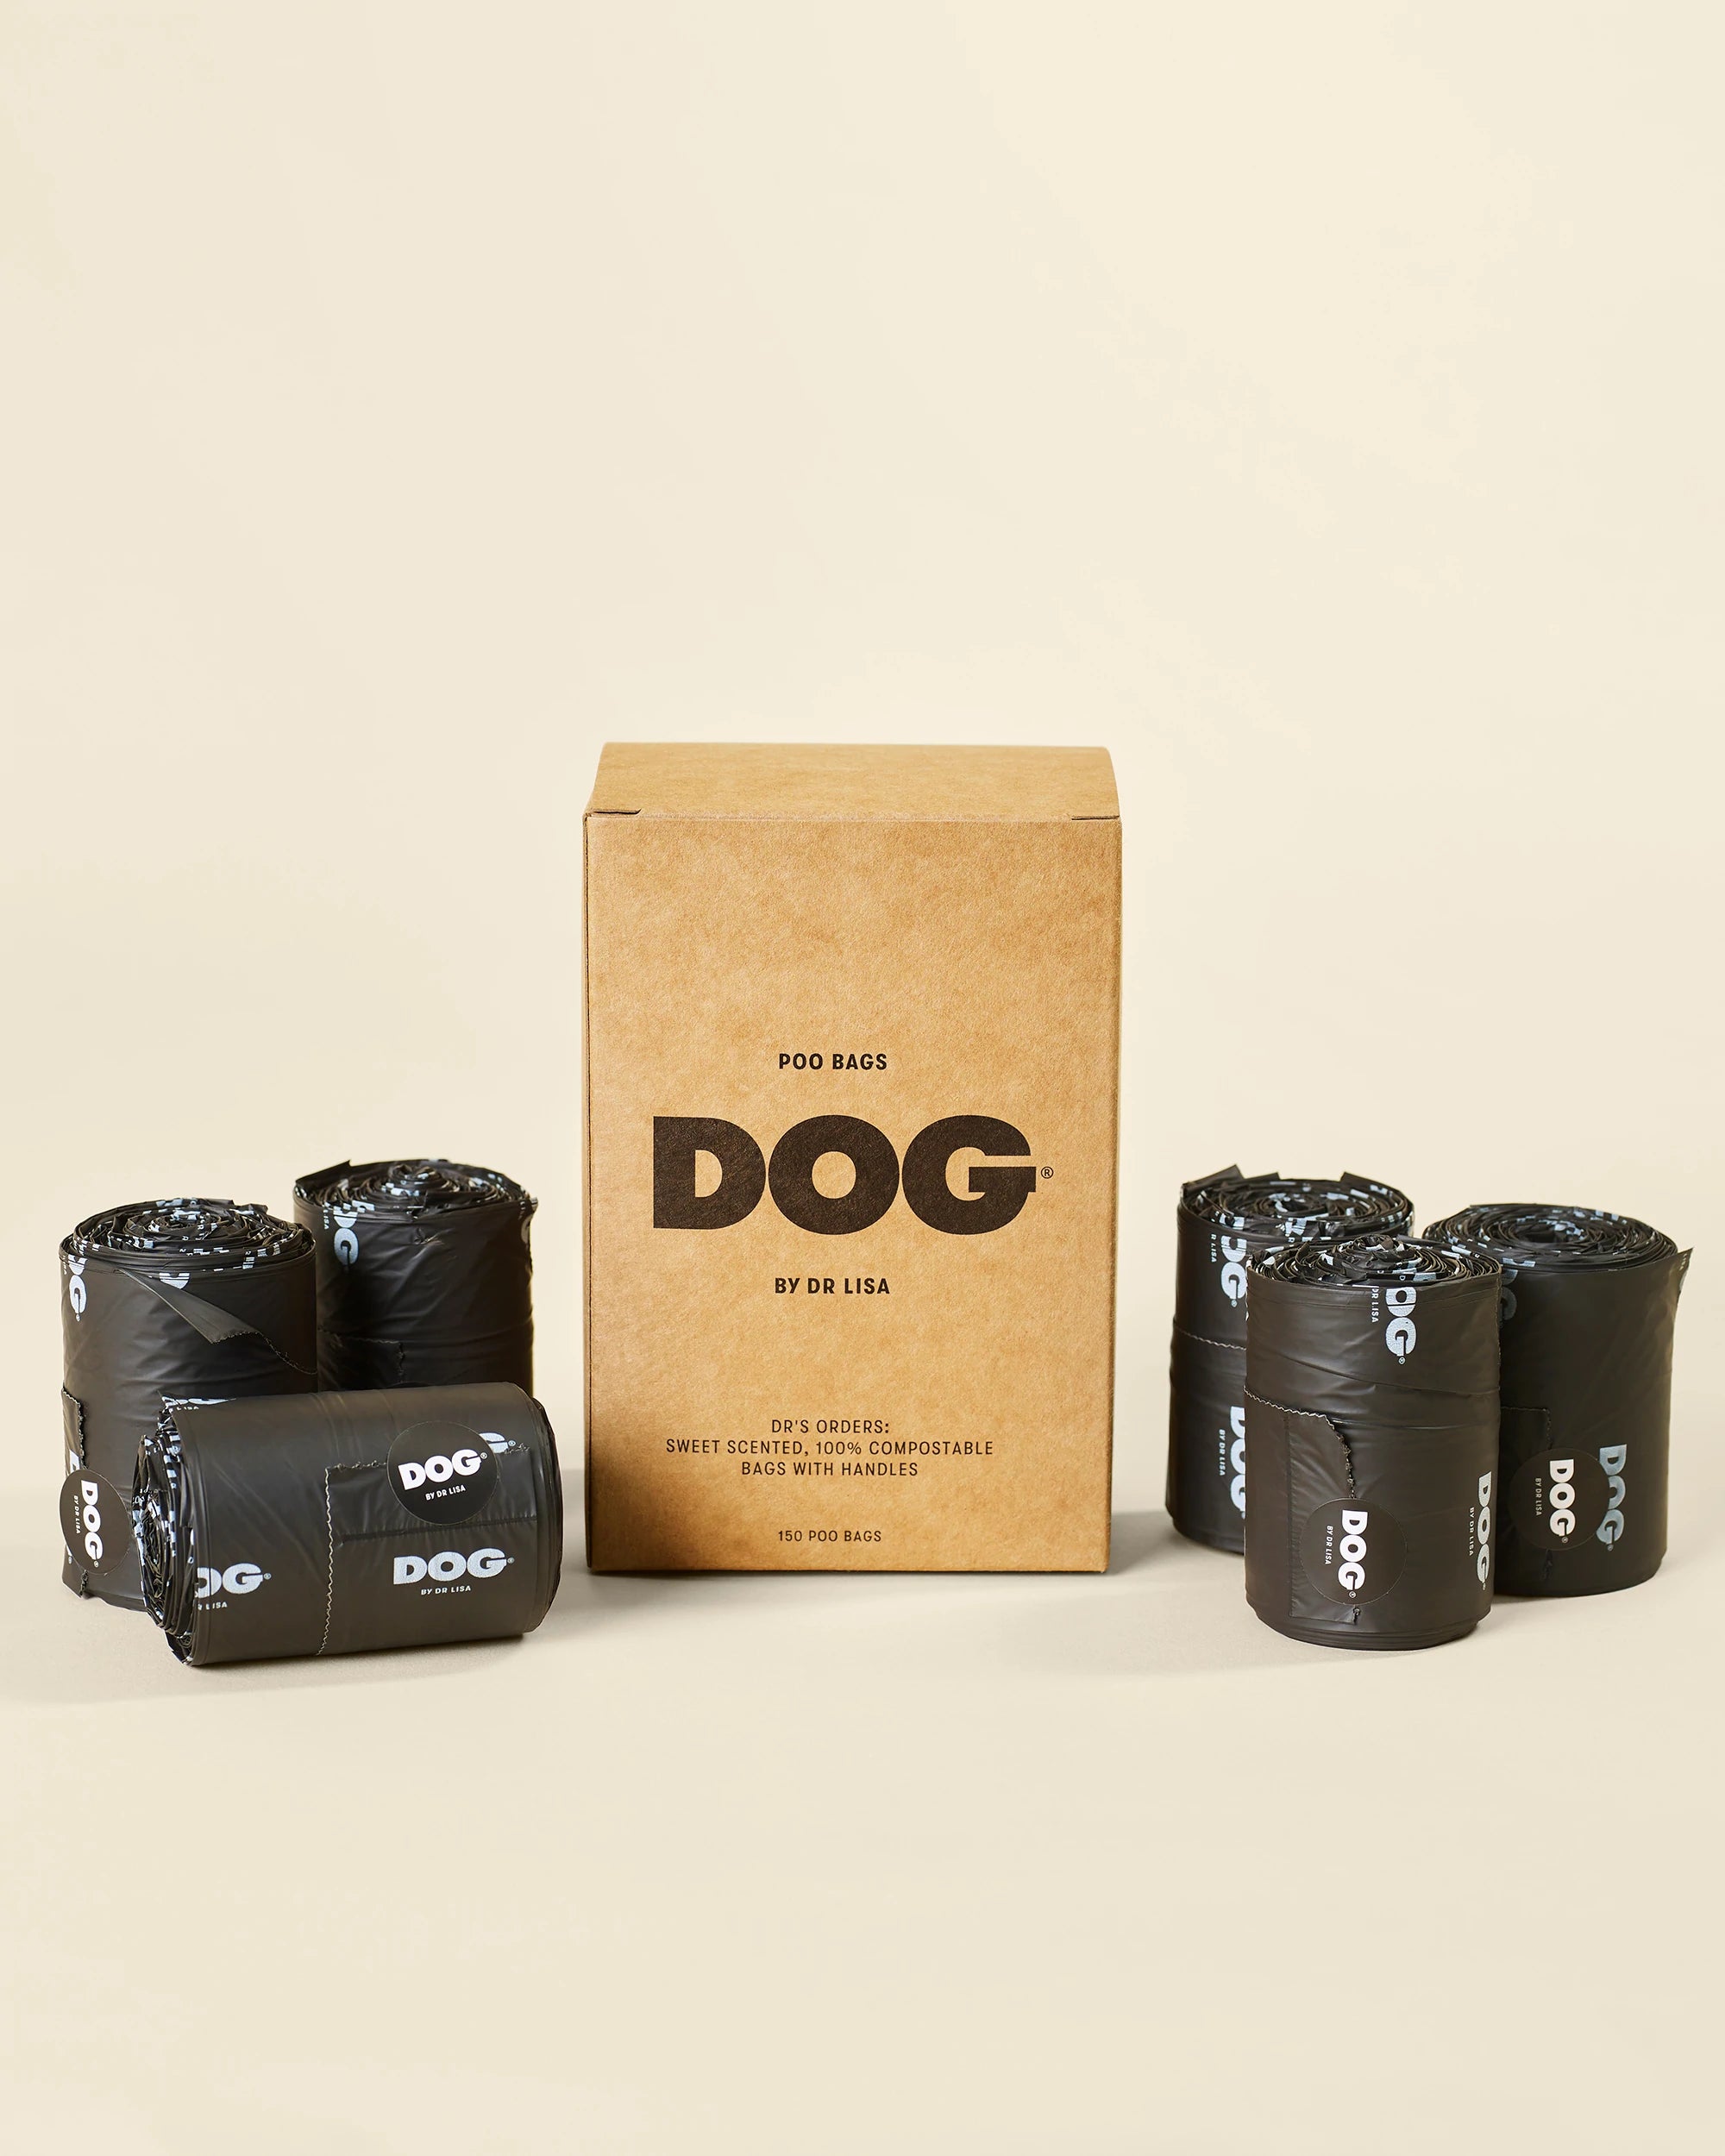 DOG Poo Bags - Beechworth Emporium